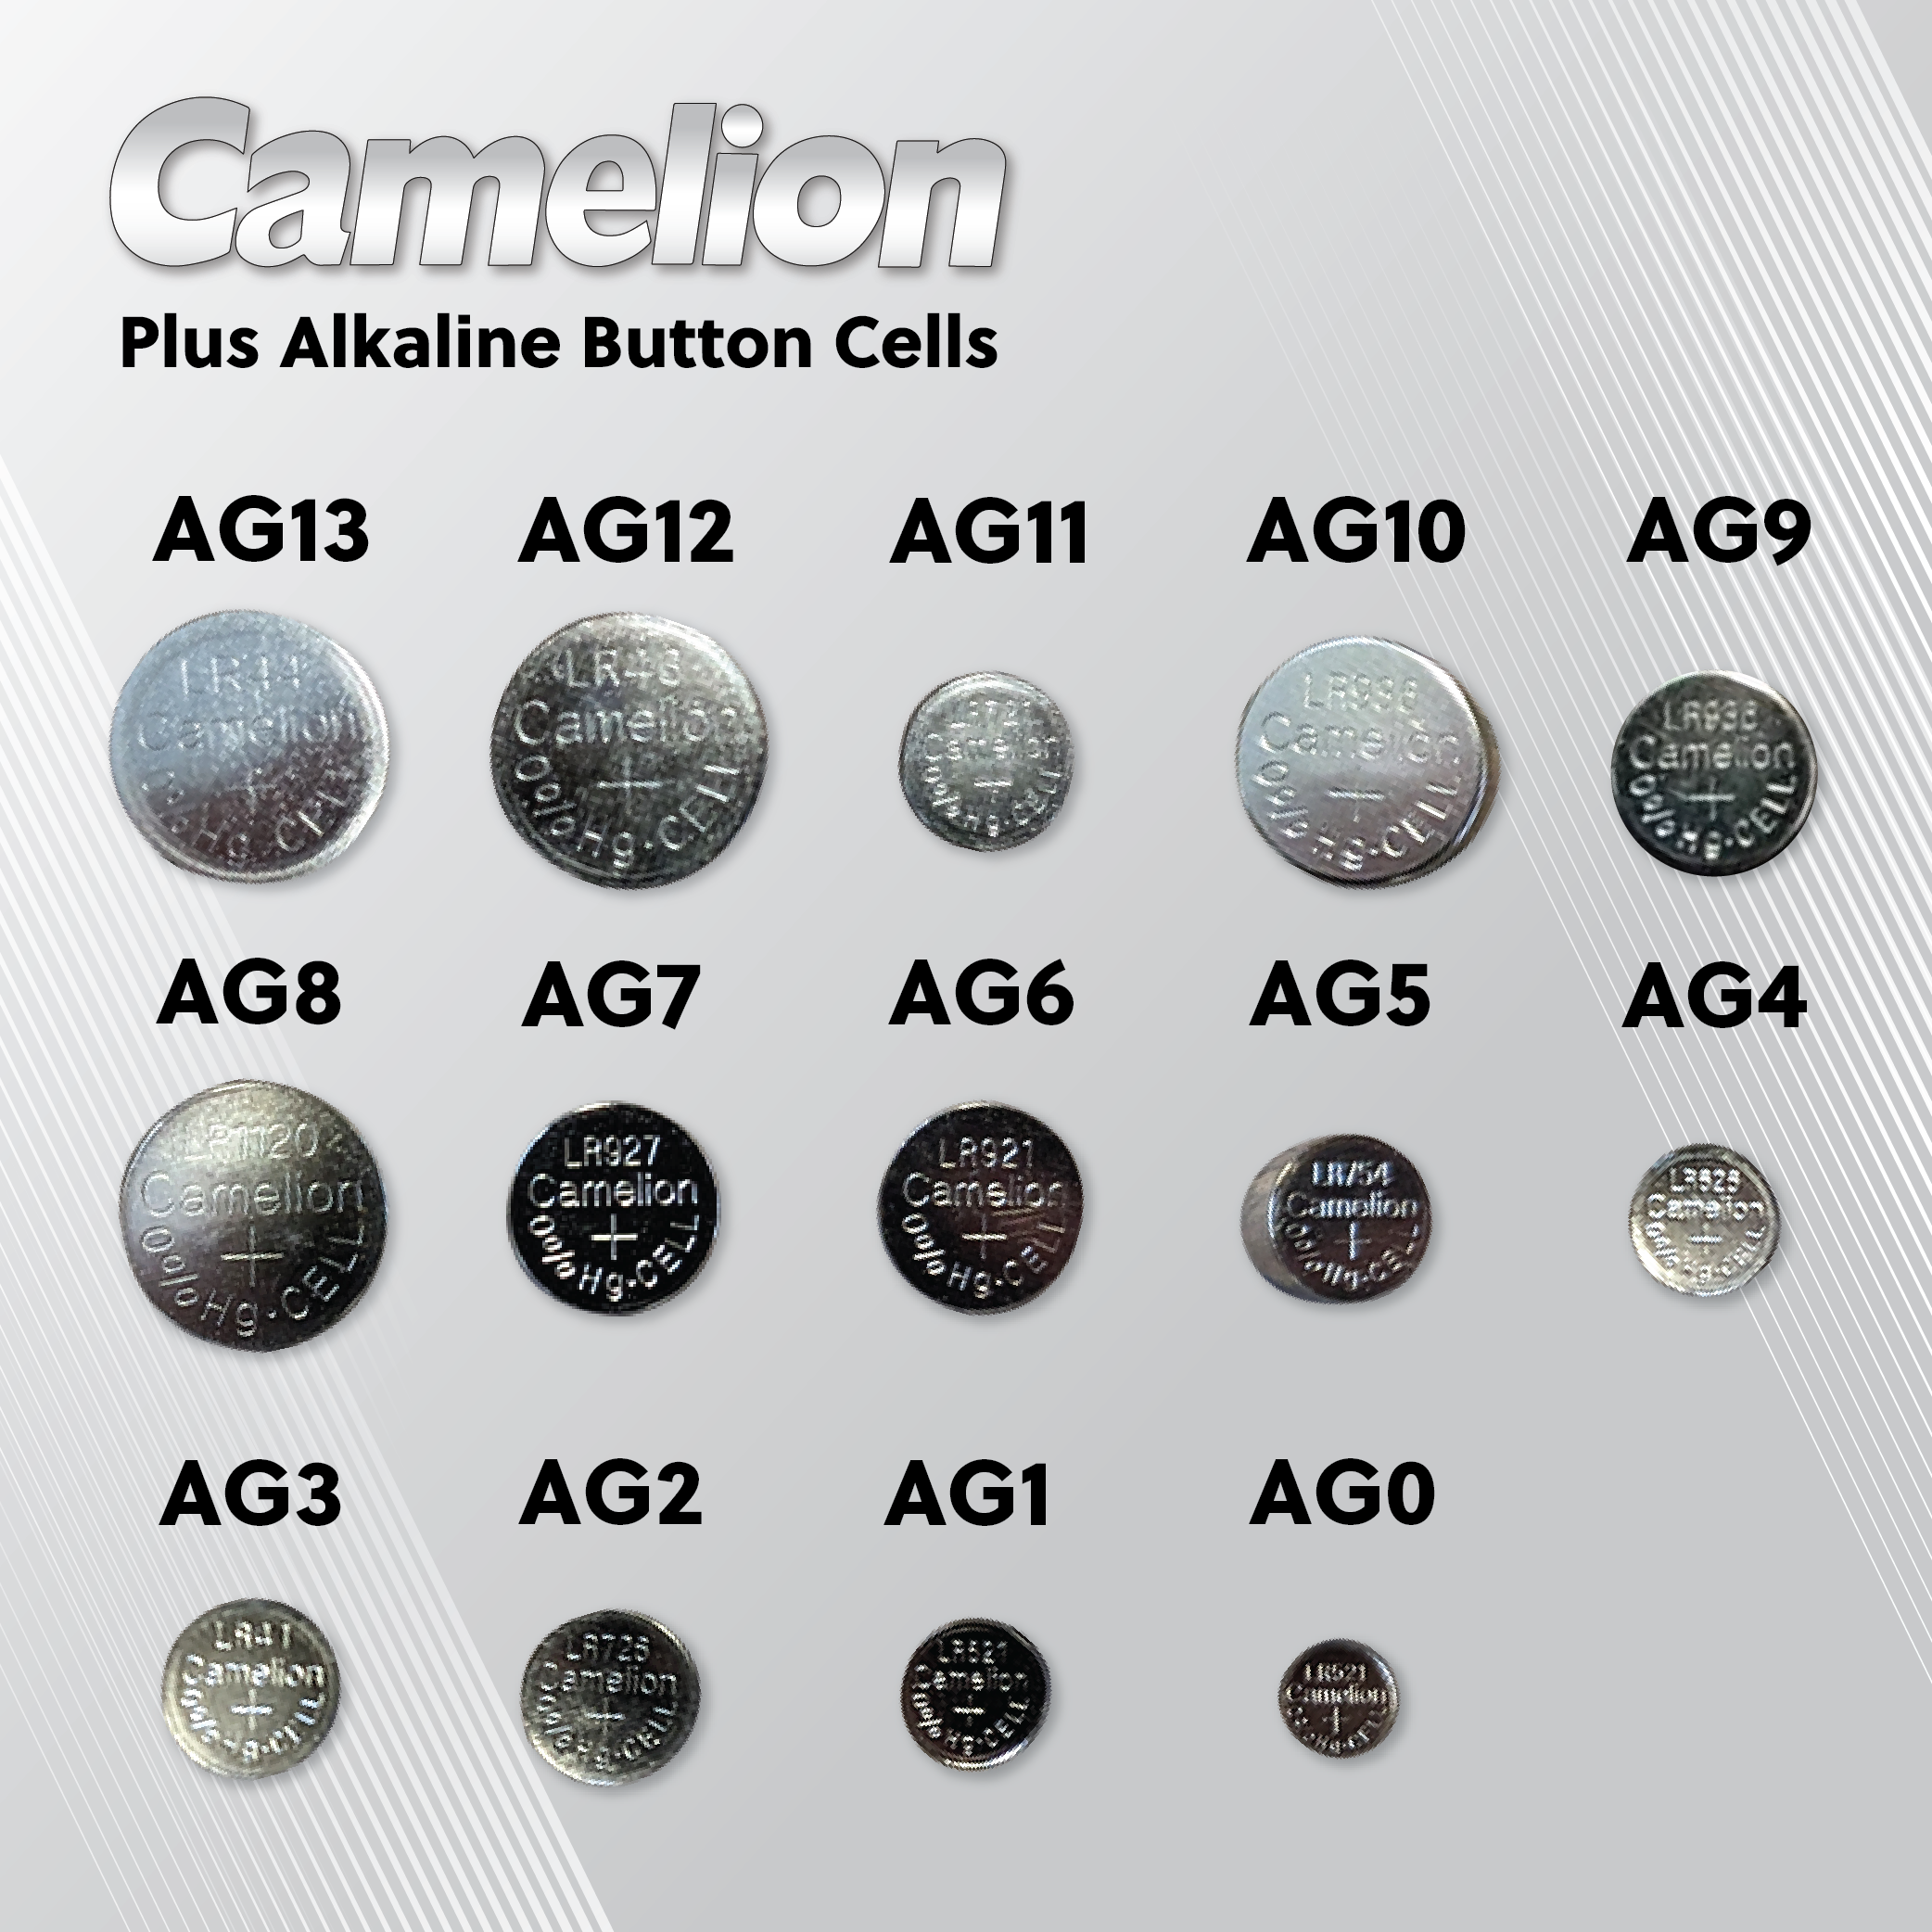 Pile bouton LR 48 alcaline(s) Camelion 66 mAh 1.5 V 2 pc(s) S761451